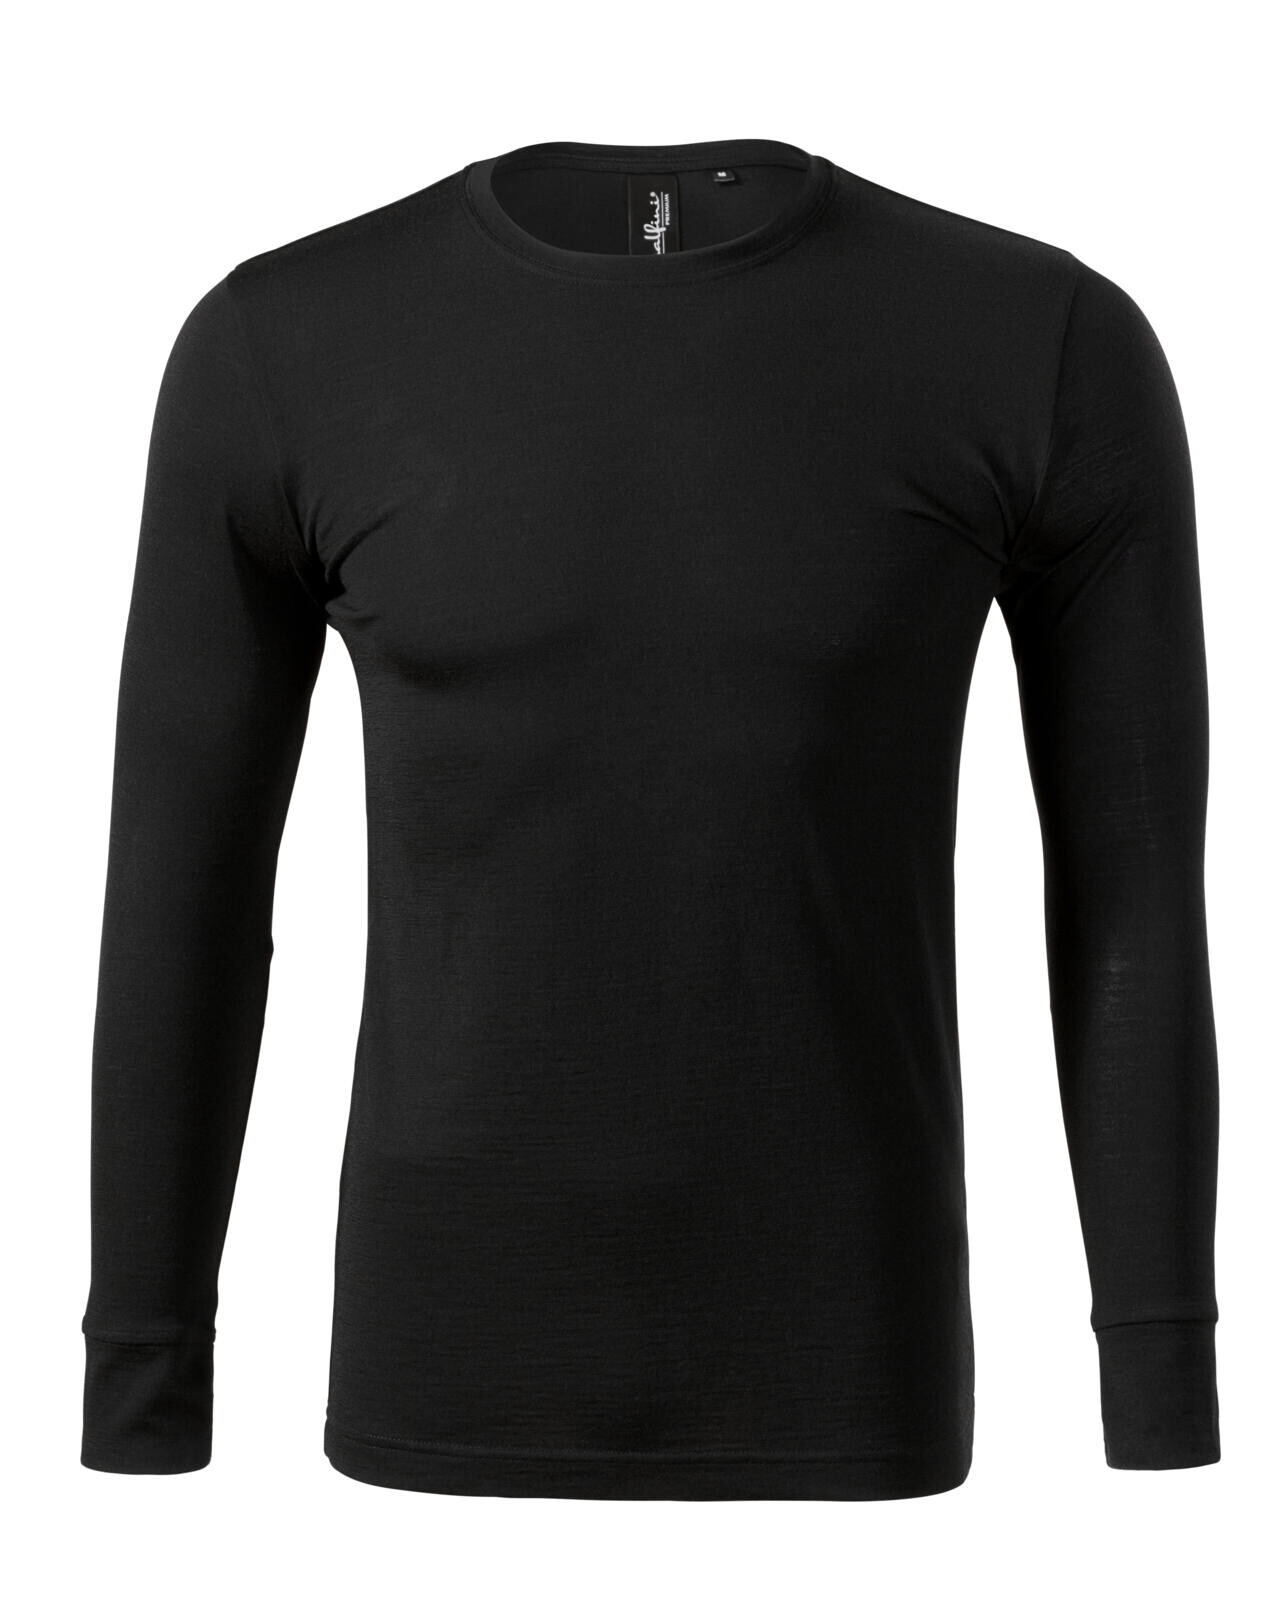 Pánske merino tričko s dlhým rukávom Malfini Premium Merino Rise LS 159 - veľkosť: L, farba: čierna